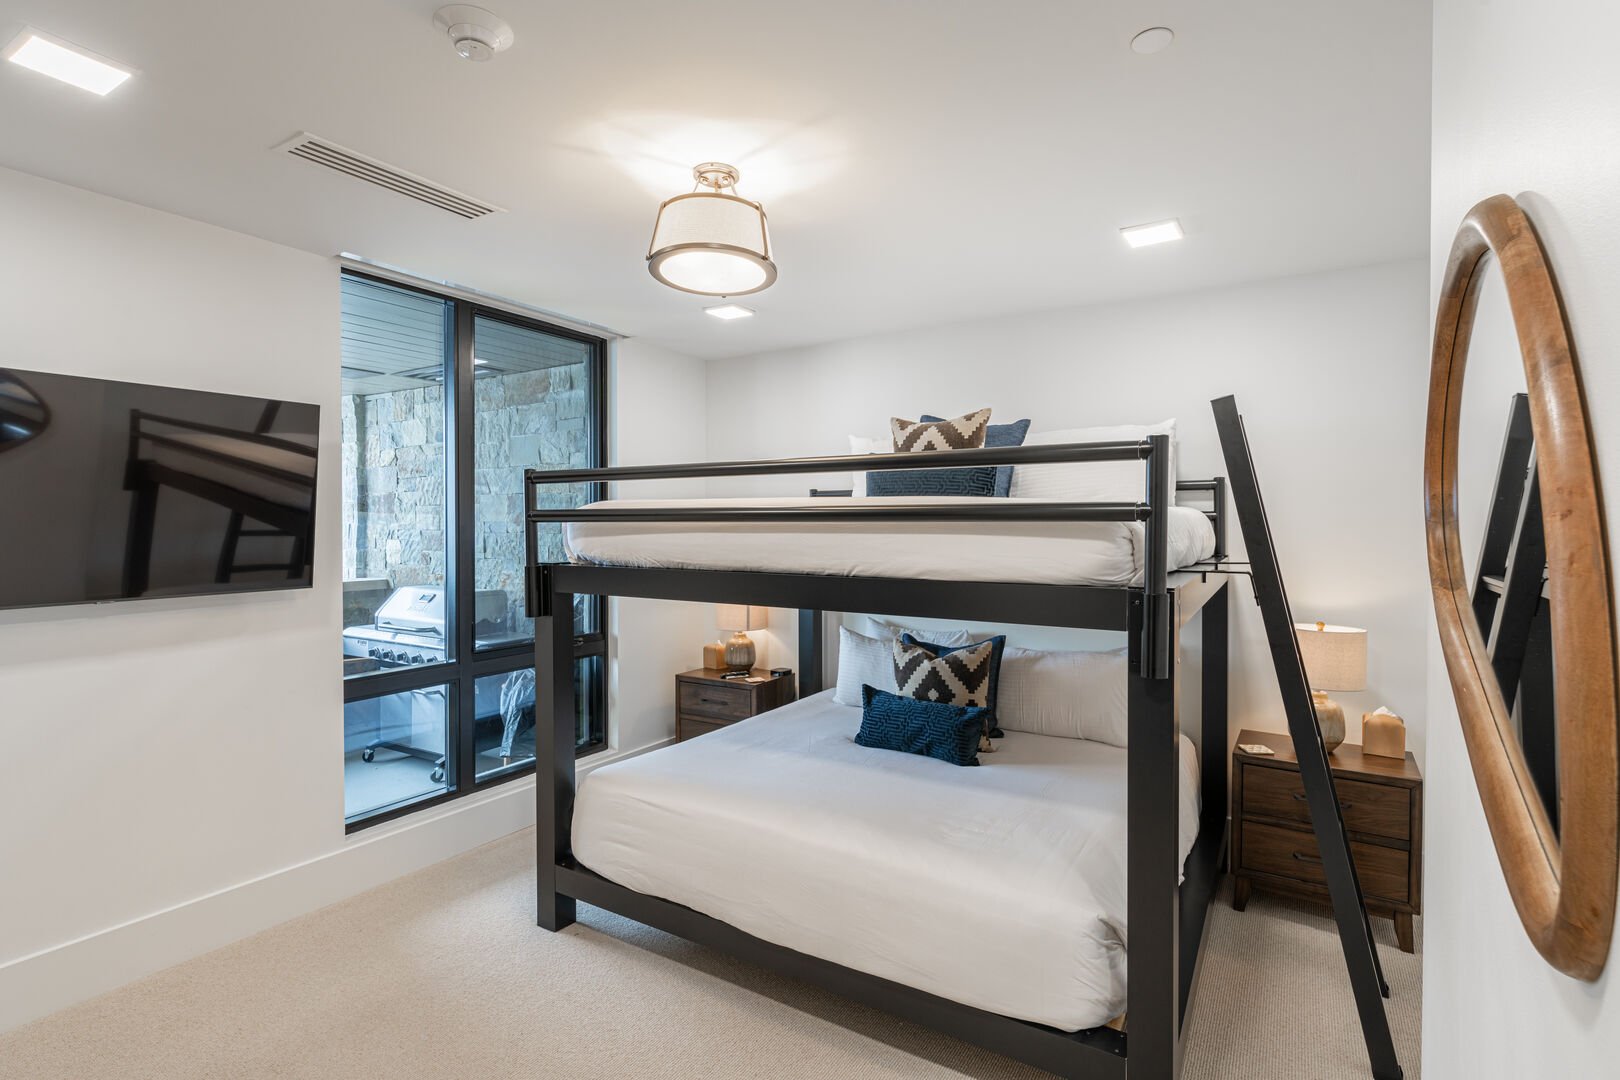 Guest suite features a queen over queen bunk bed.